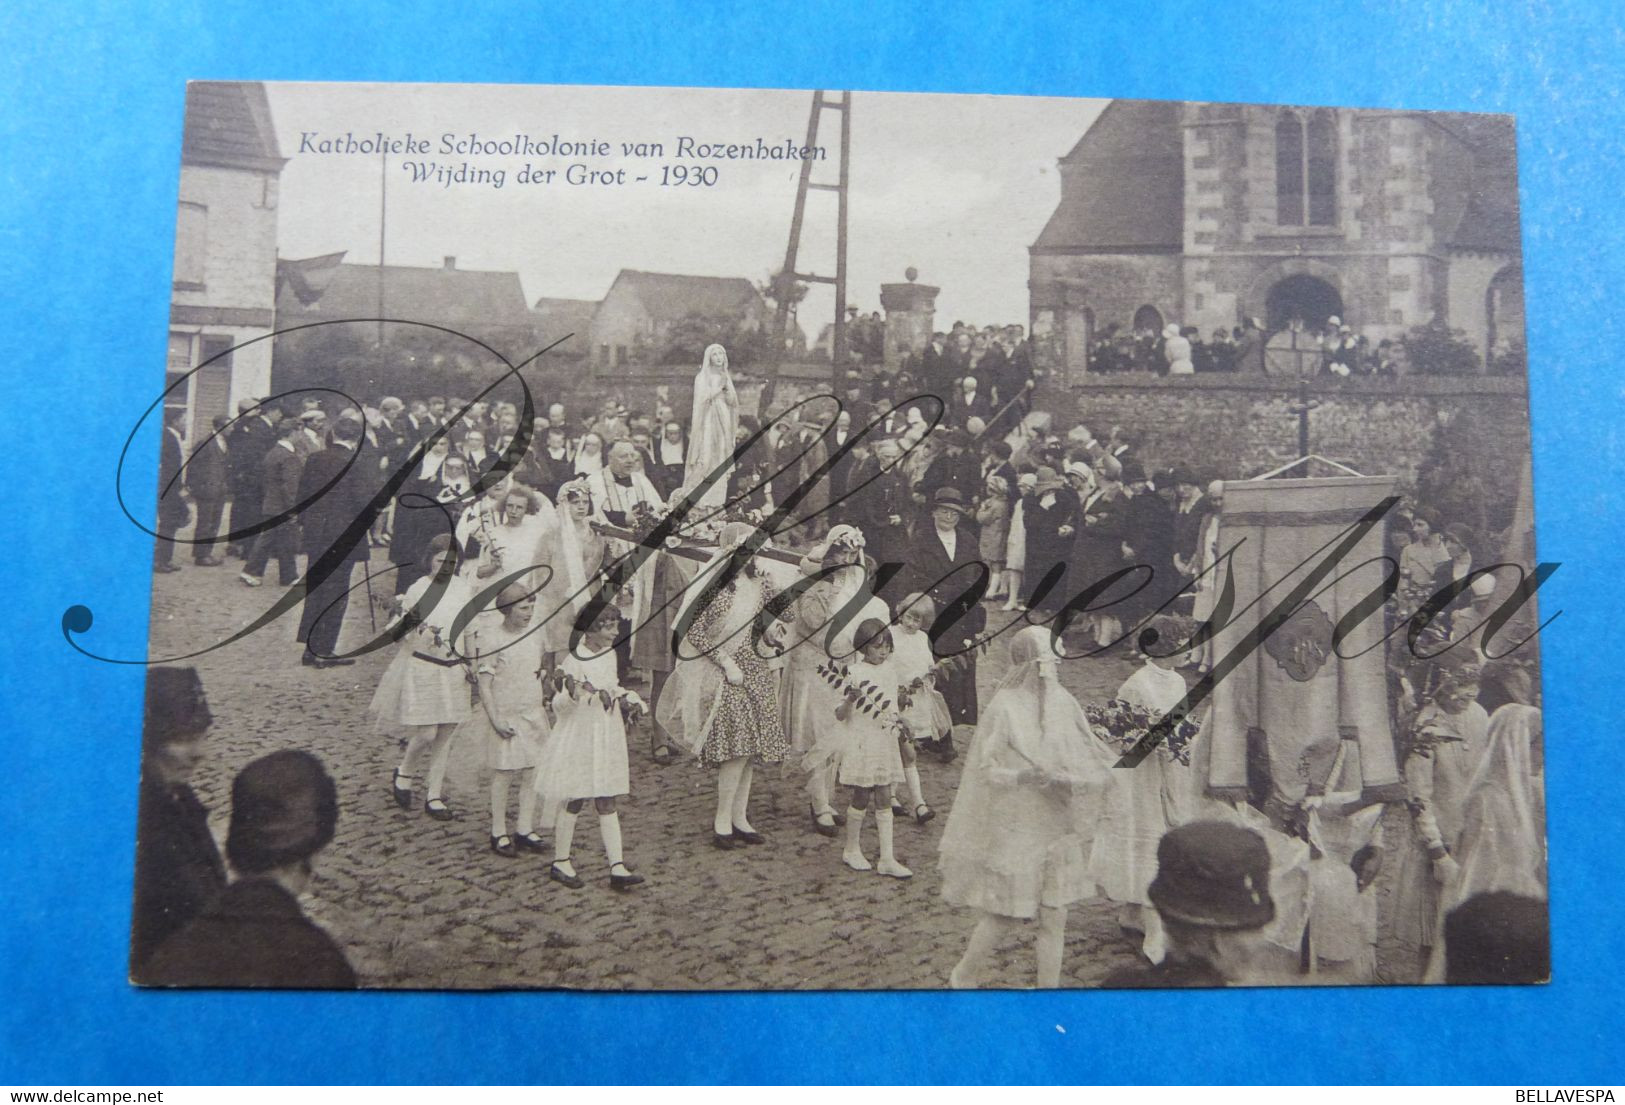 Russeignies Katholieke Schoolkolonie Van Rozennaken. Wijding Der Grot 1930 Mont-de-l'Enclus - Kluisbergen